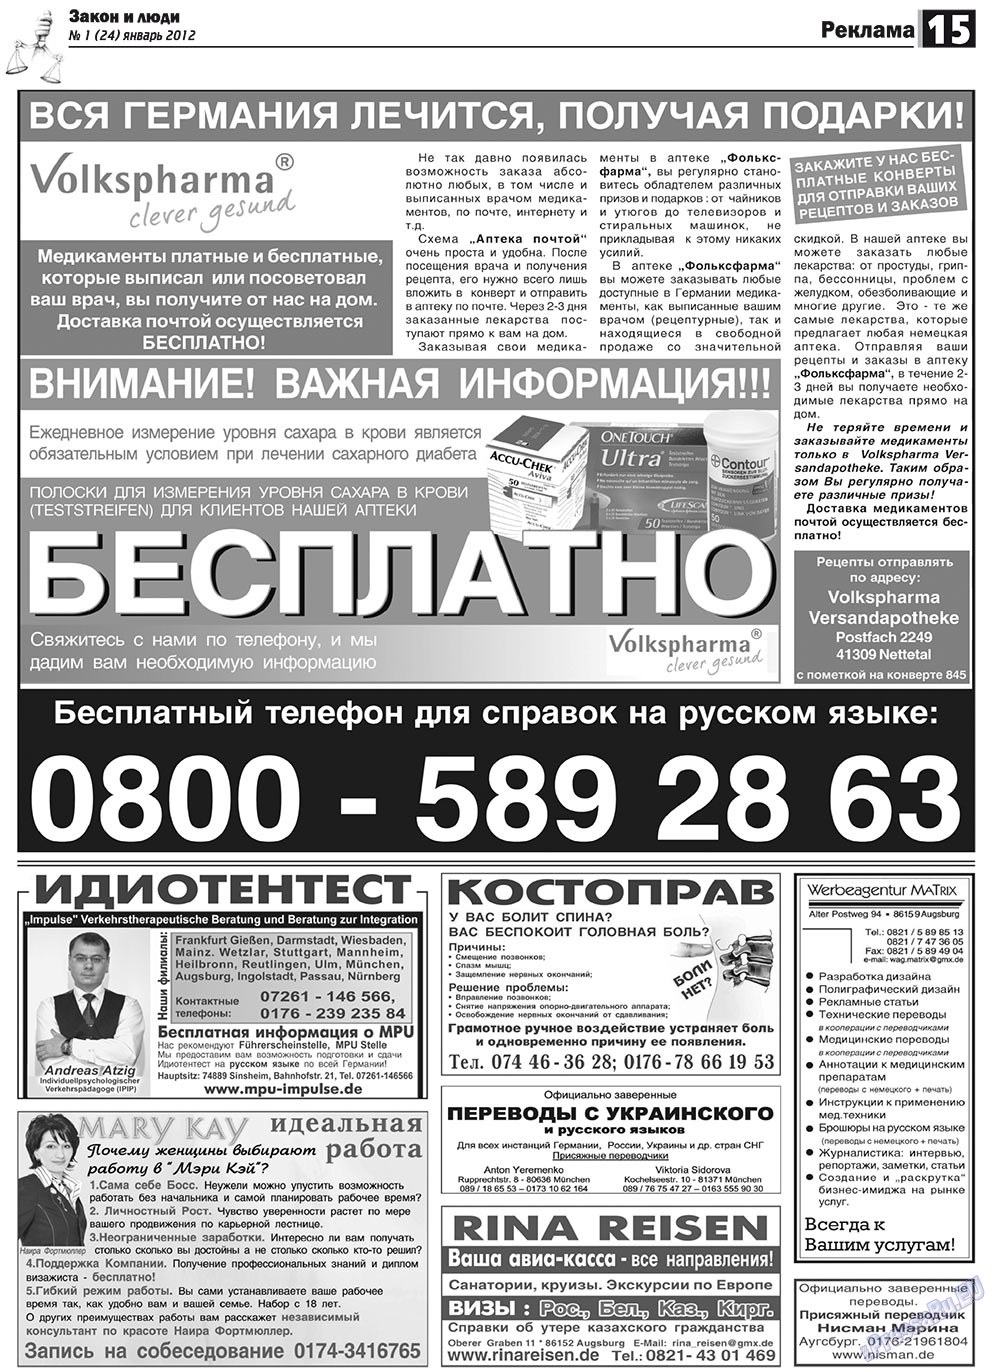 Закон и люди, газета. 2012 №1 стр.15